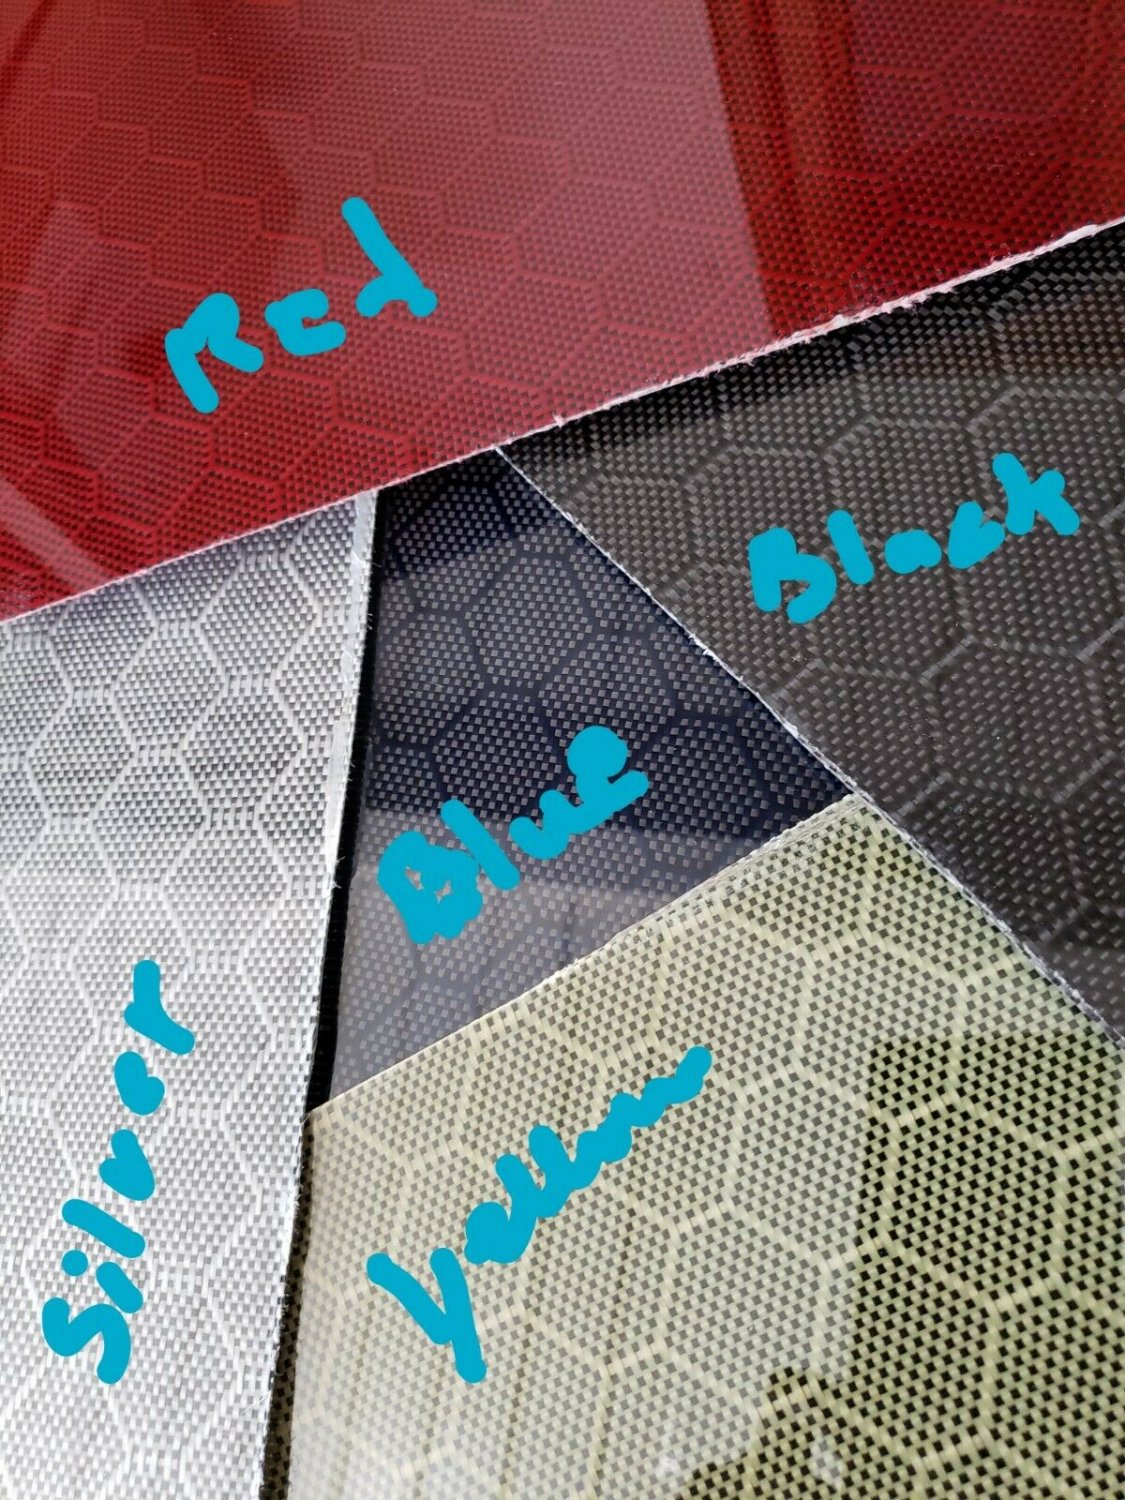 6"x60"x3/32" 2x2 Twill Carbon Fiber Fiberglass Plate Sheet Panel Glossy One Side